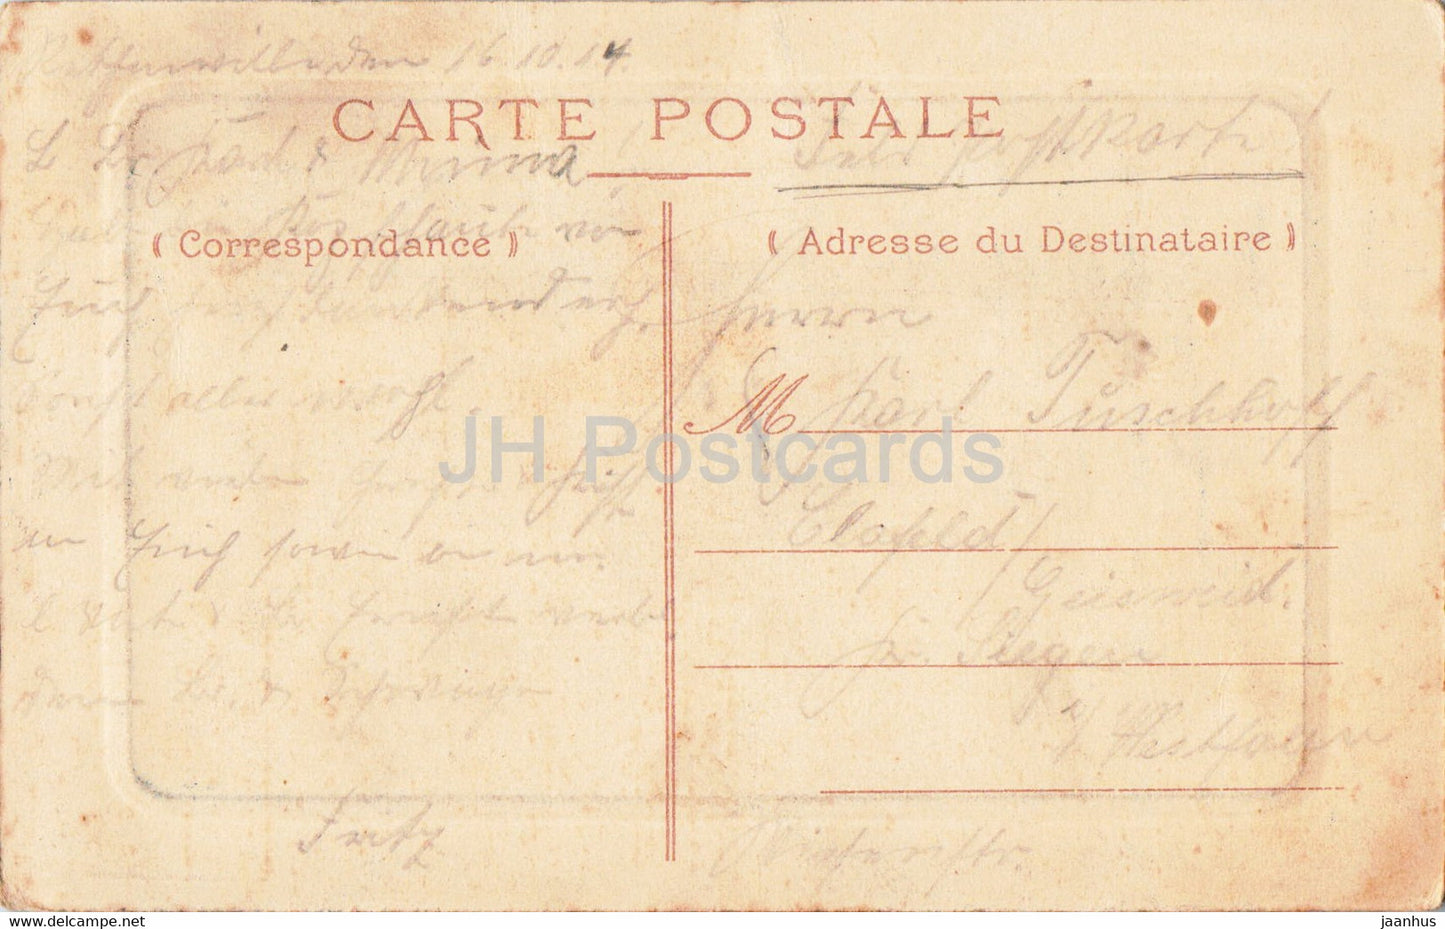 Boulogne sur Mer - Calle des Pecheurs - Schiff - Boot - alte Postkarte - 1917 - Frankreich - gebraucht